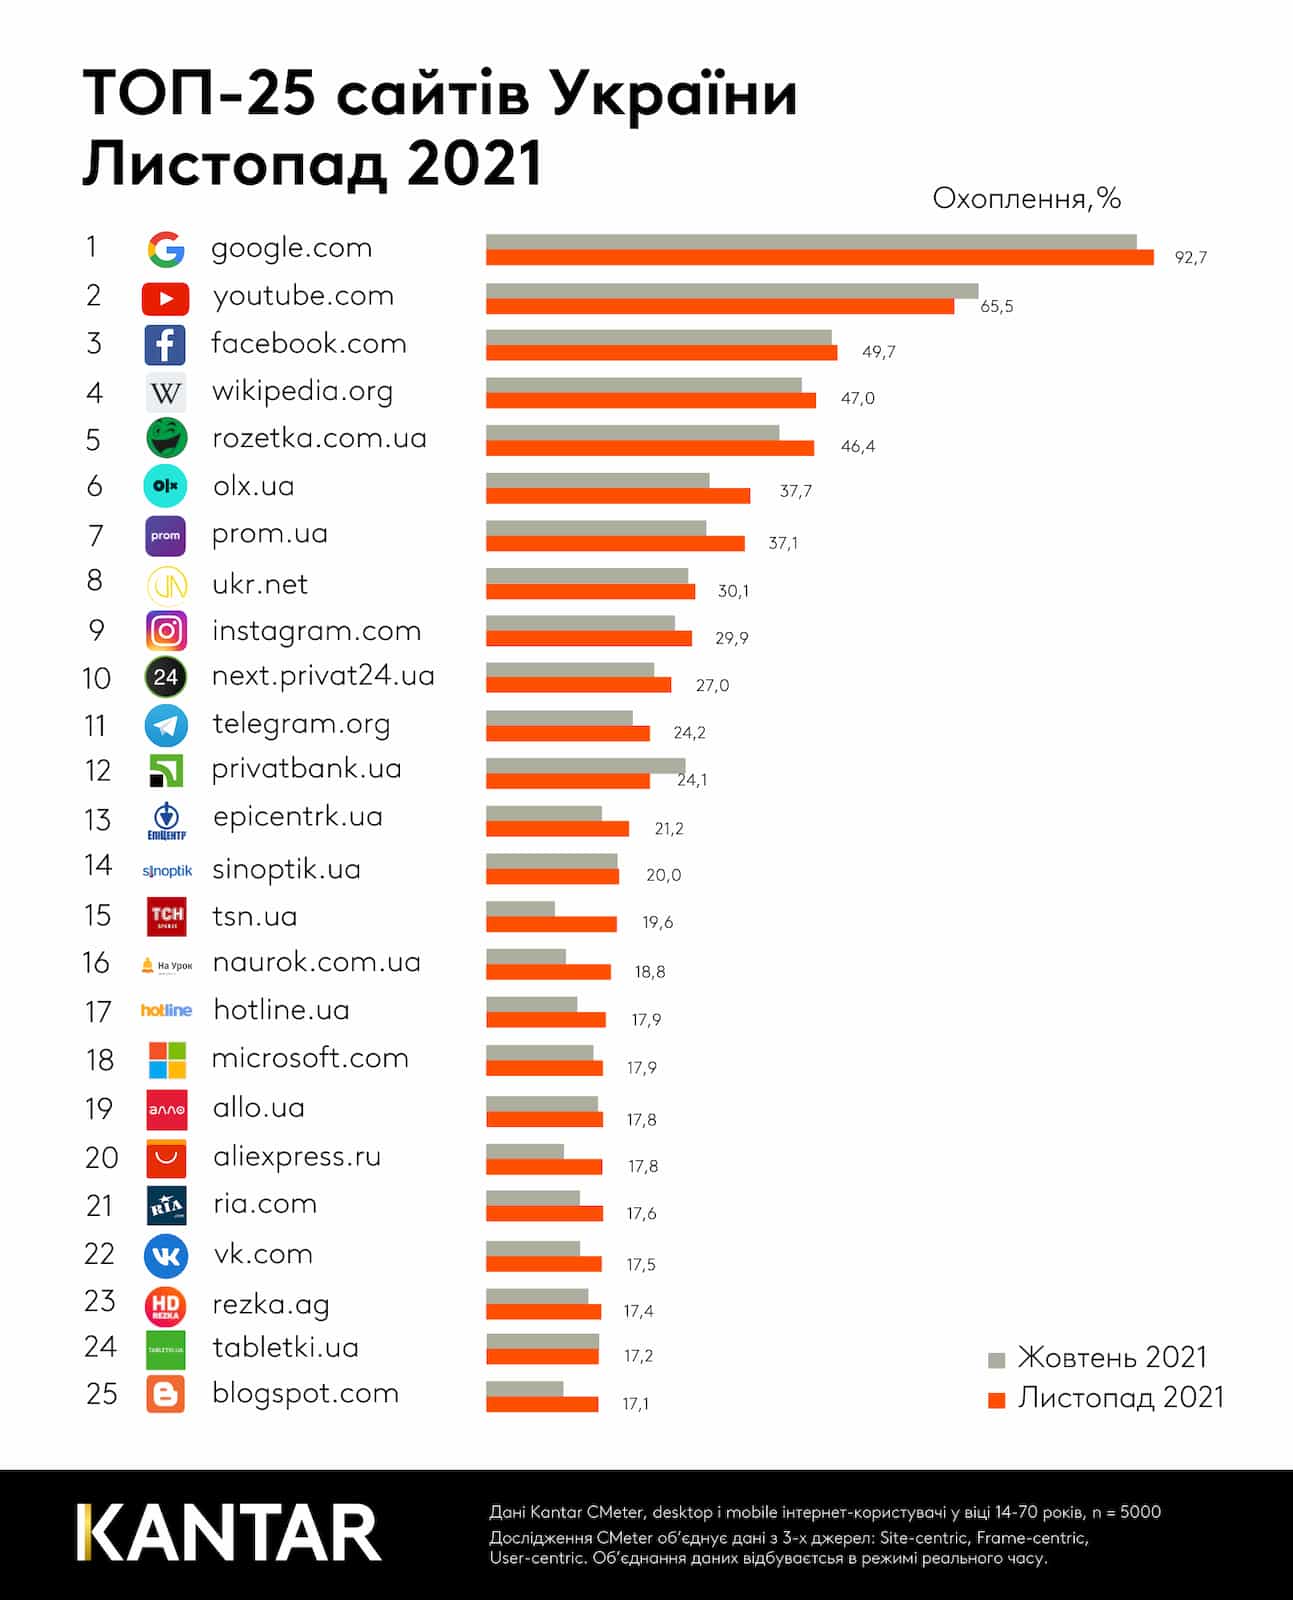 найпопулярніші вебсайти в Україні у листопаді 2021 року